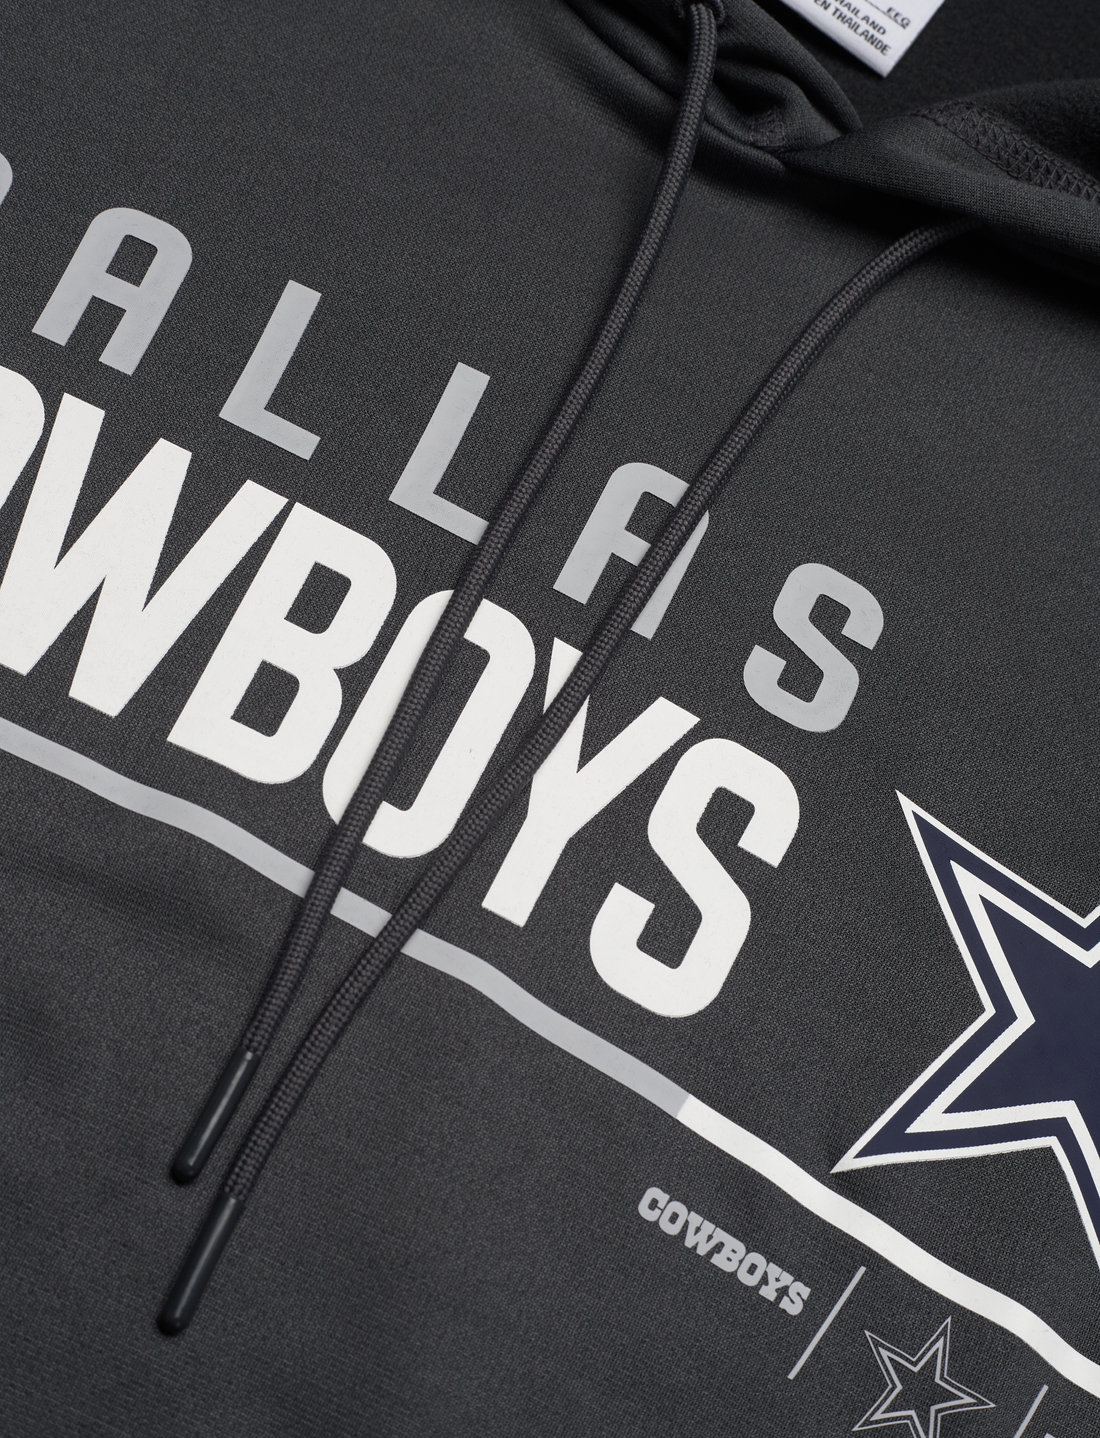 NIKE Fan Gear Dallas Cowboys Mens Nike Therma Pullover Hoodie - Hoodies